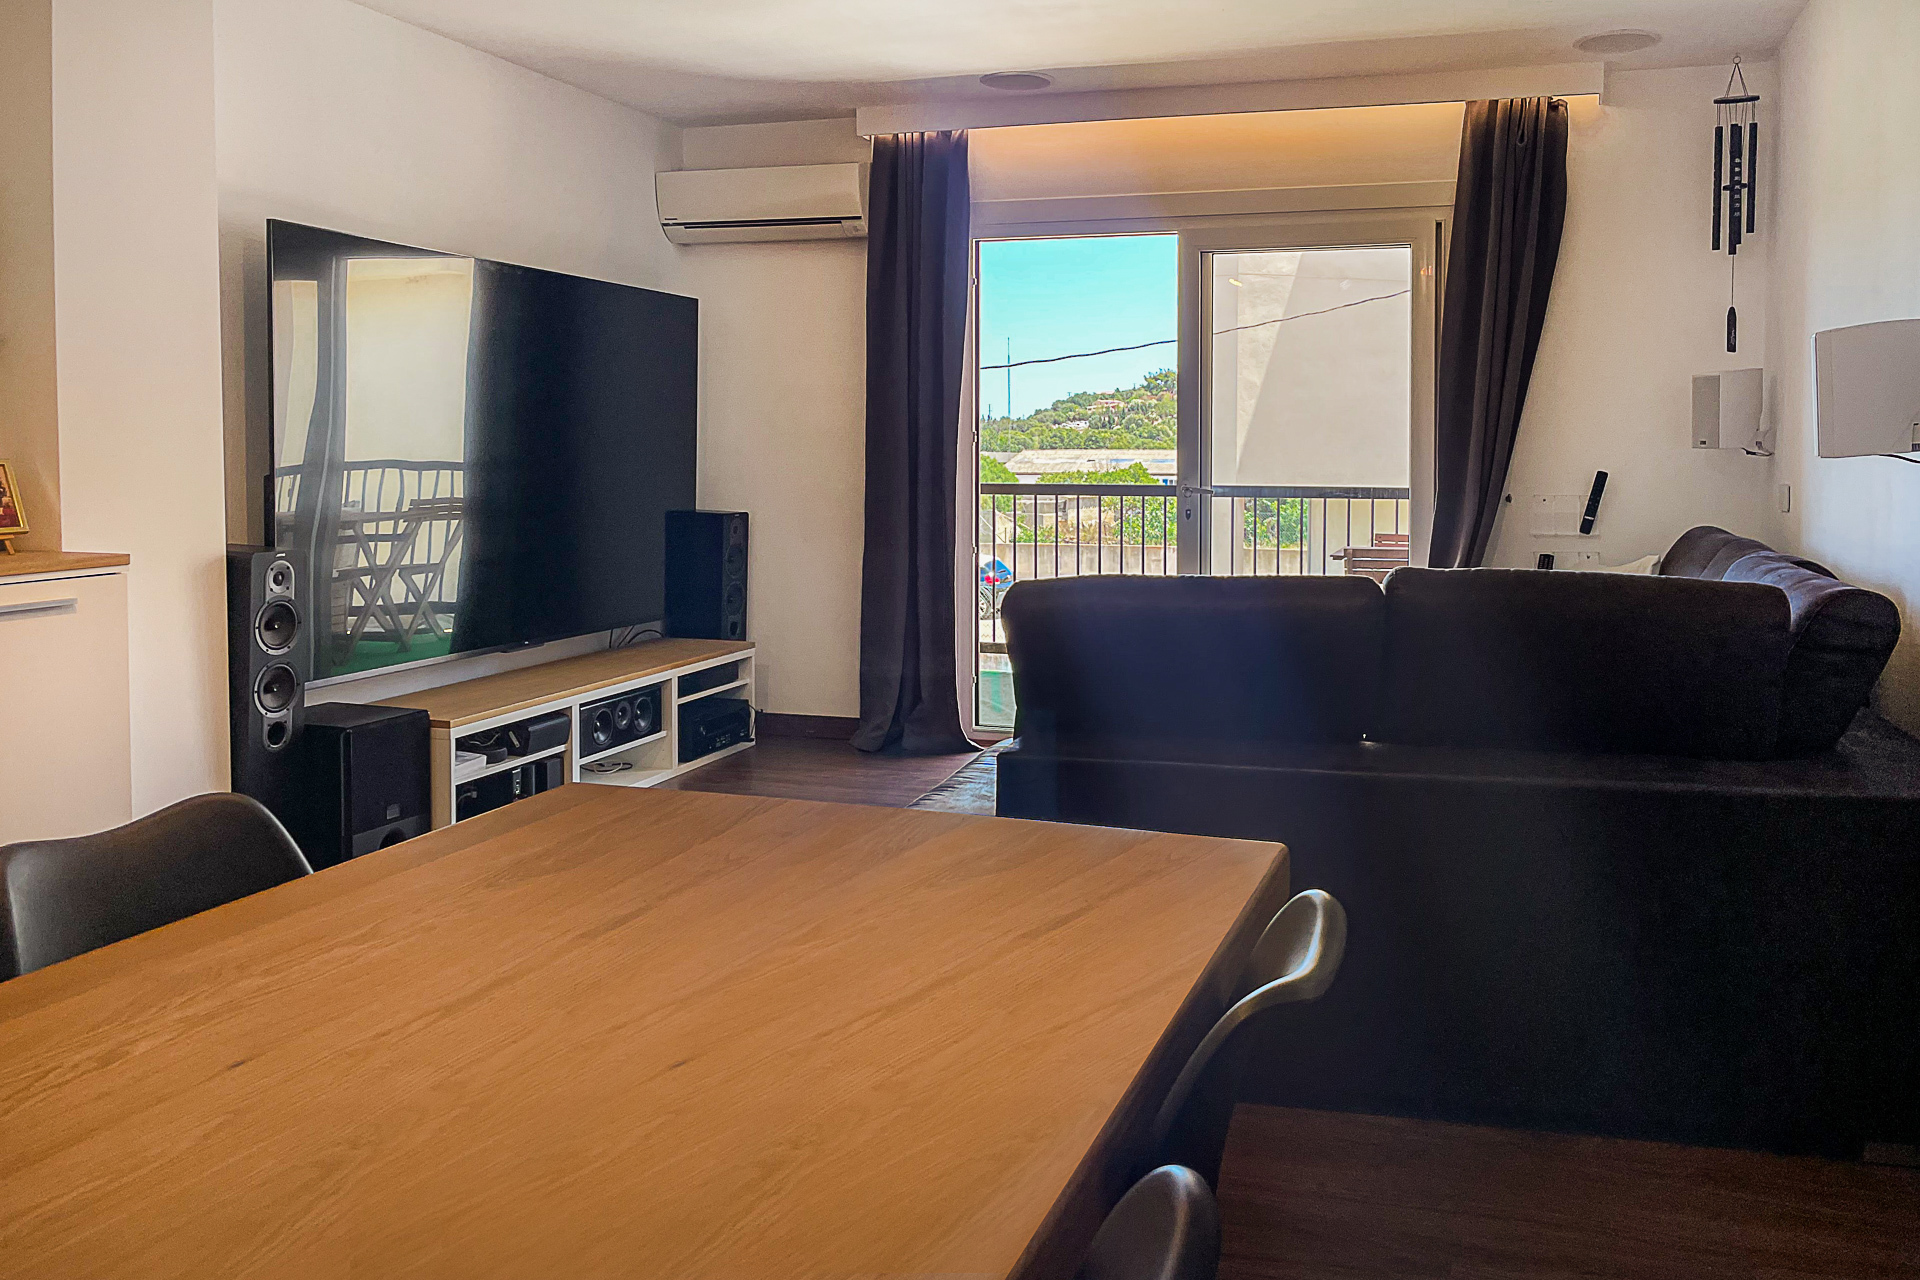 Encantador piso con sistema de casa + sonido inteligente, baños modernizados y balcón, 07580 Capdepera (España), Piso en planta